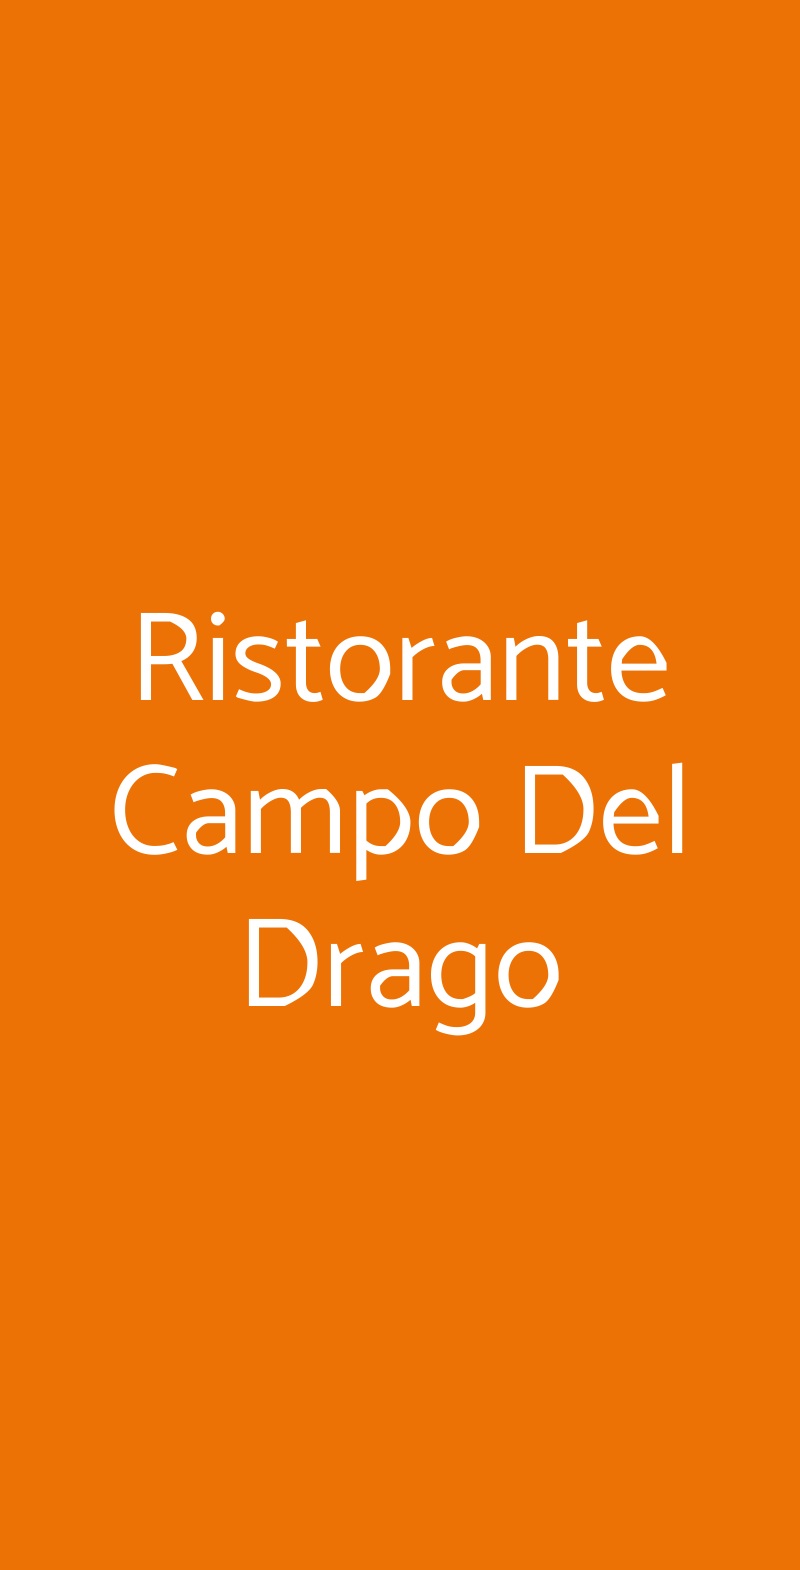 Ristorante Campo Del Drago Montalcino menù 1 pagina